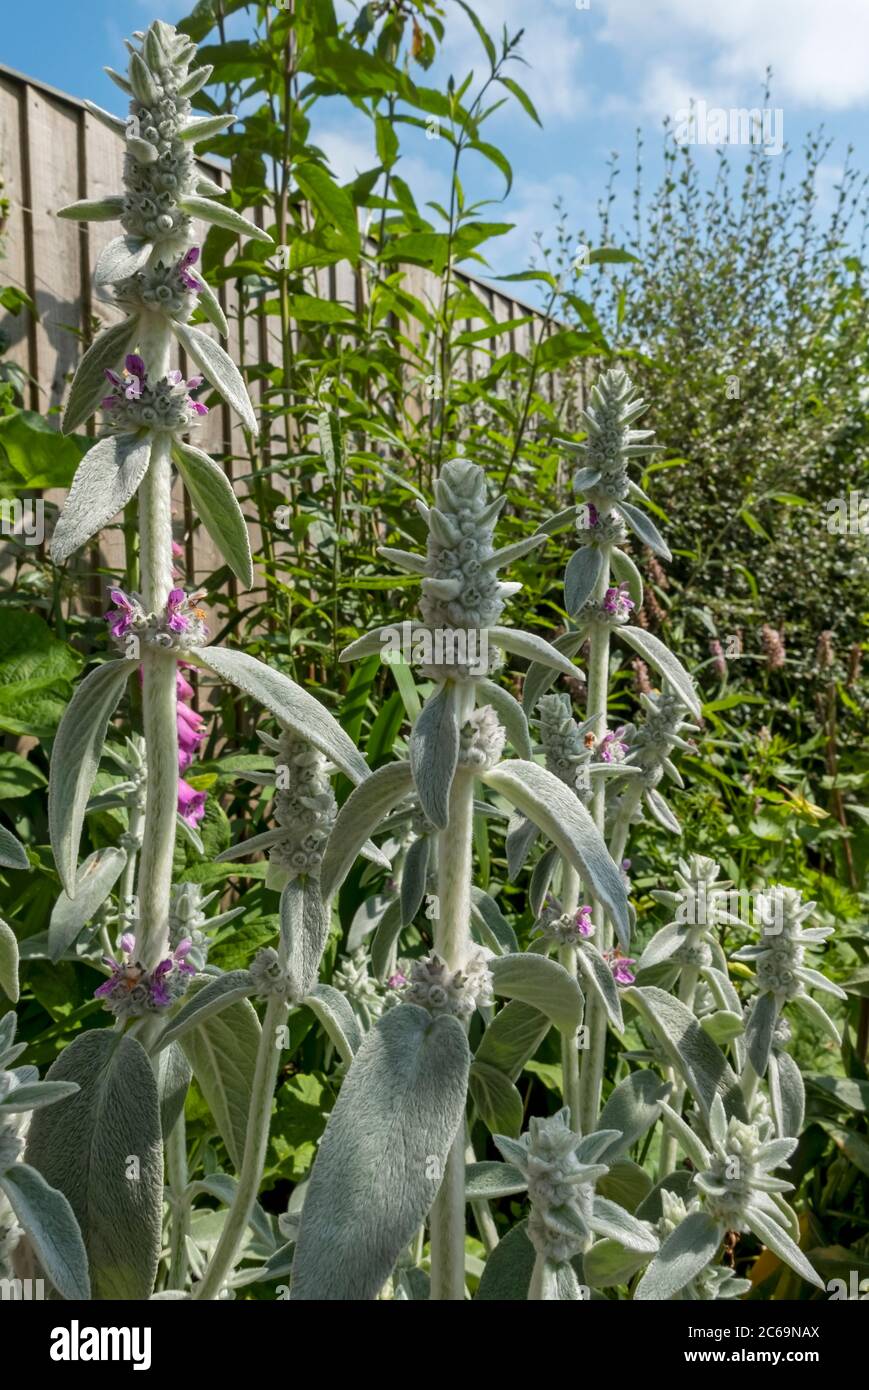 Primo piano di agnelli orecchio 'Silver Carpet' fiori (Stachys byzantina) nel giardino in estate Inghilterra Regno Unito GB Gran Bretagna Foto Stock